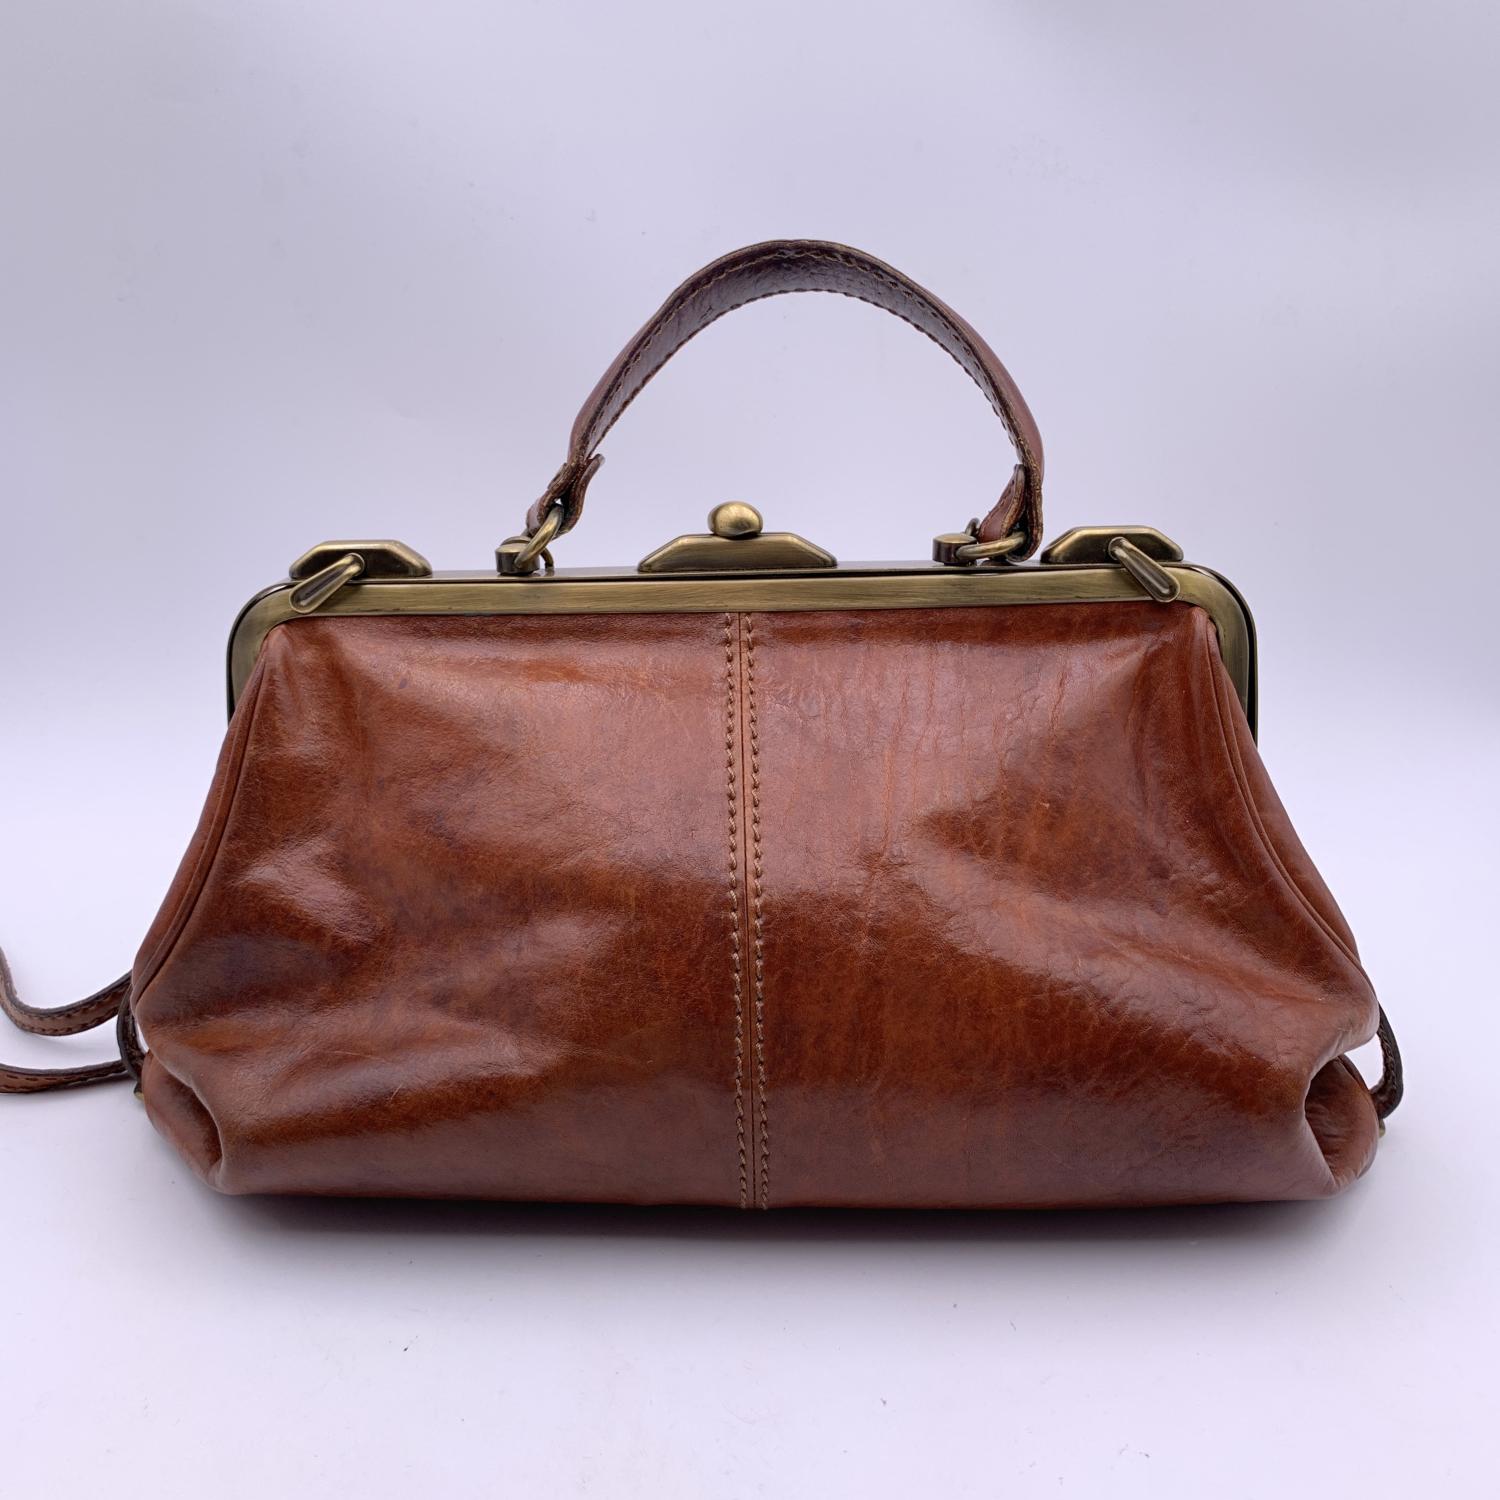 The Bridge Vintage Brown Leather Doctor Bag Satchel Handbag with Strap 4